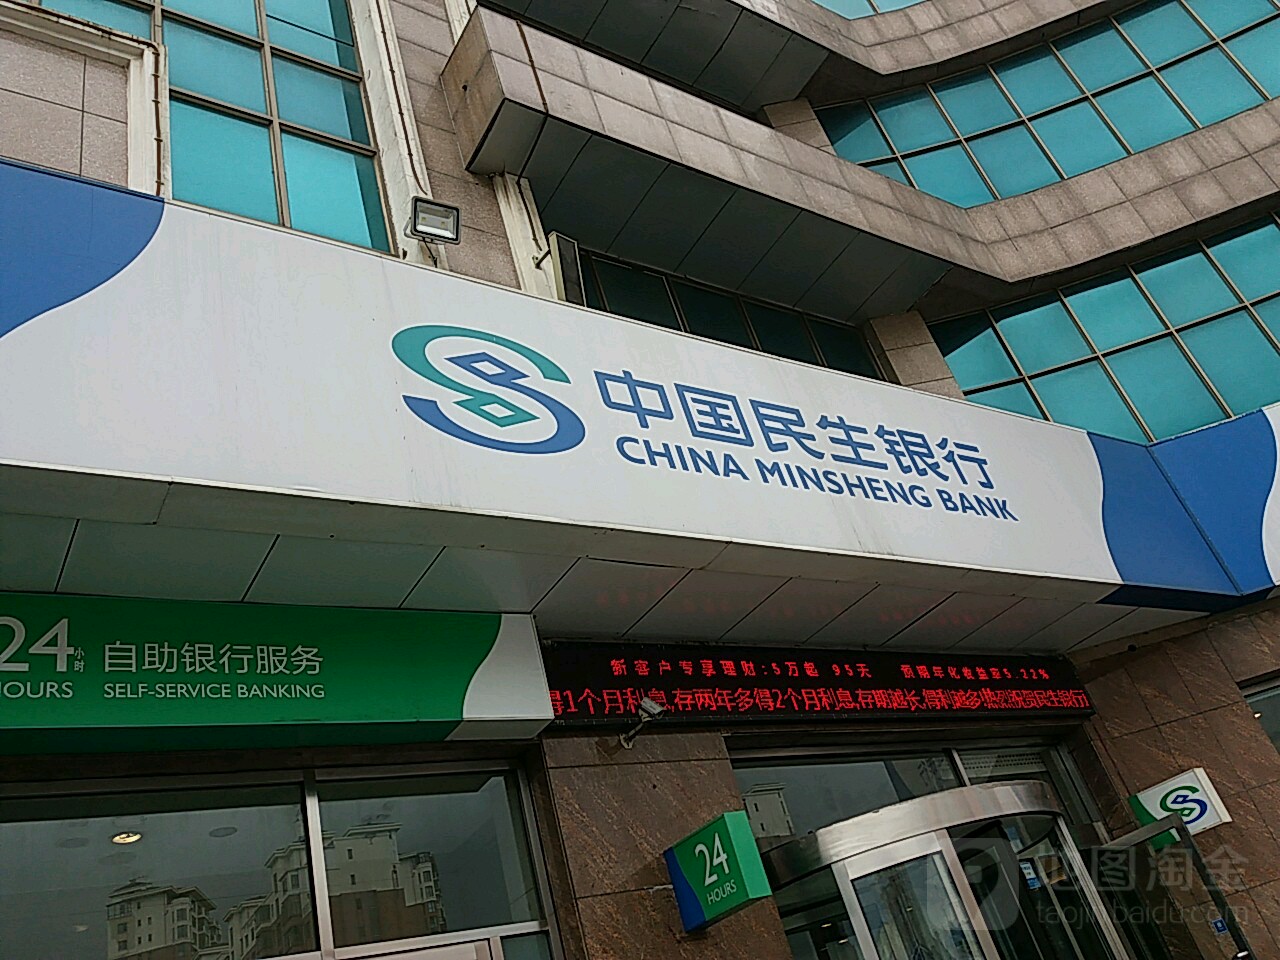 中国民生银行大连分行西南路支行